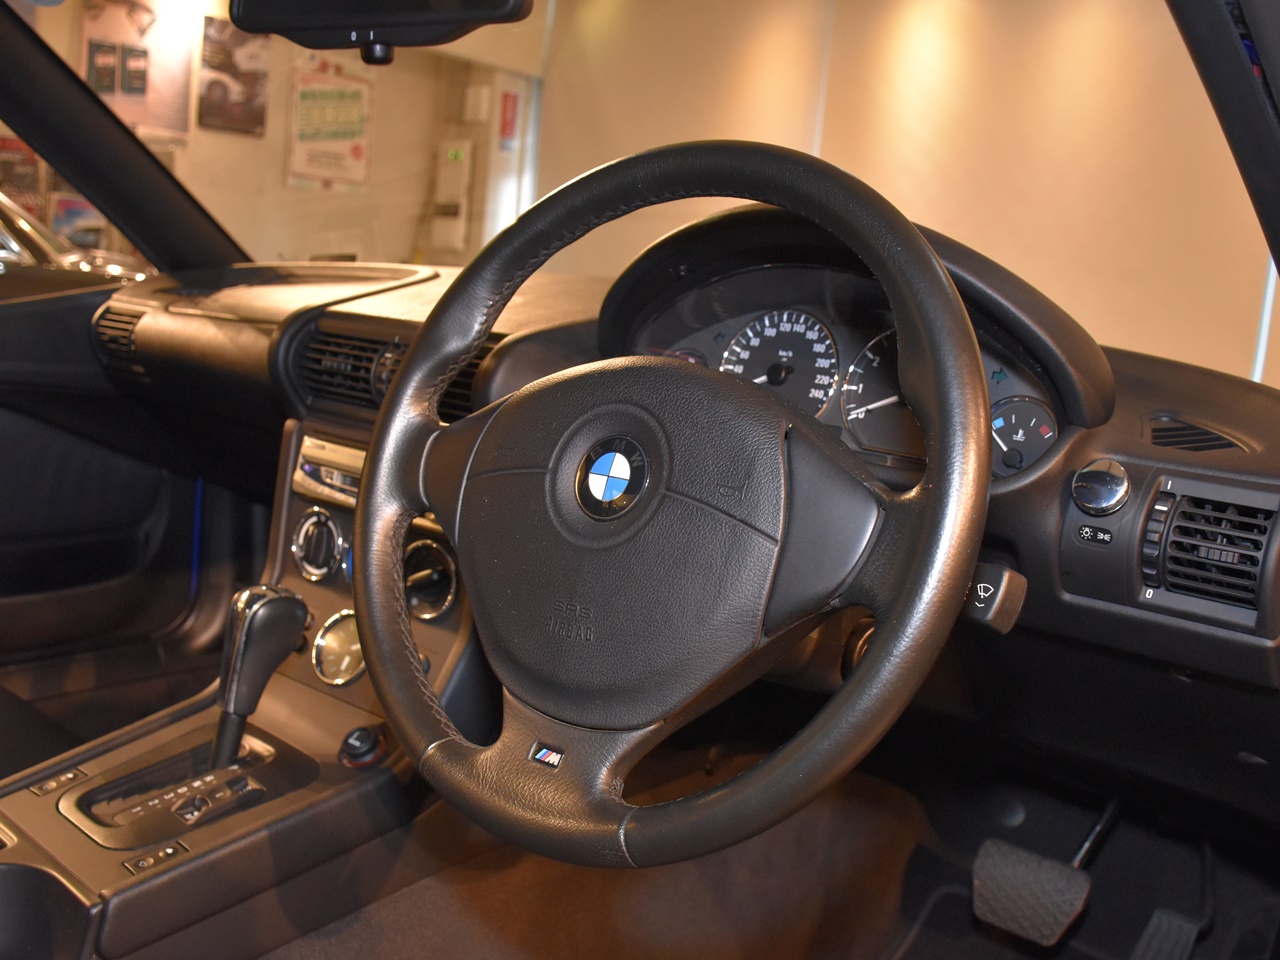 BMW　Z3